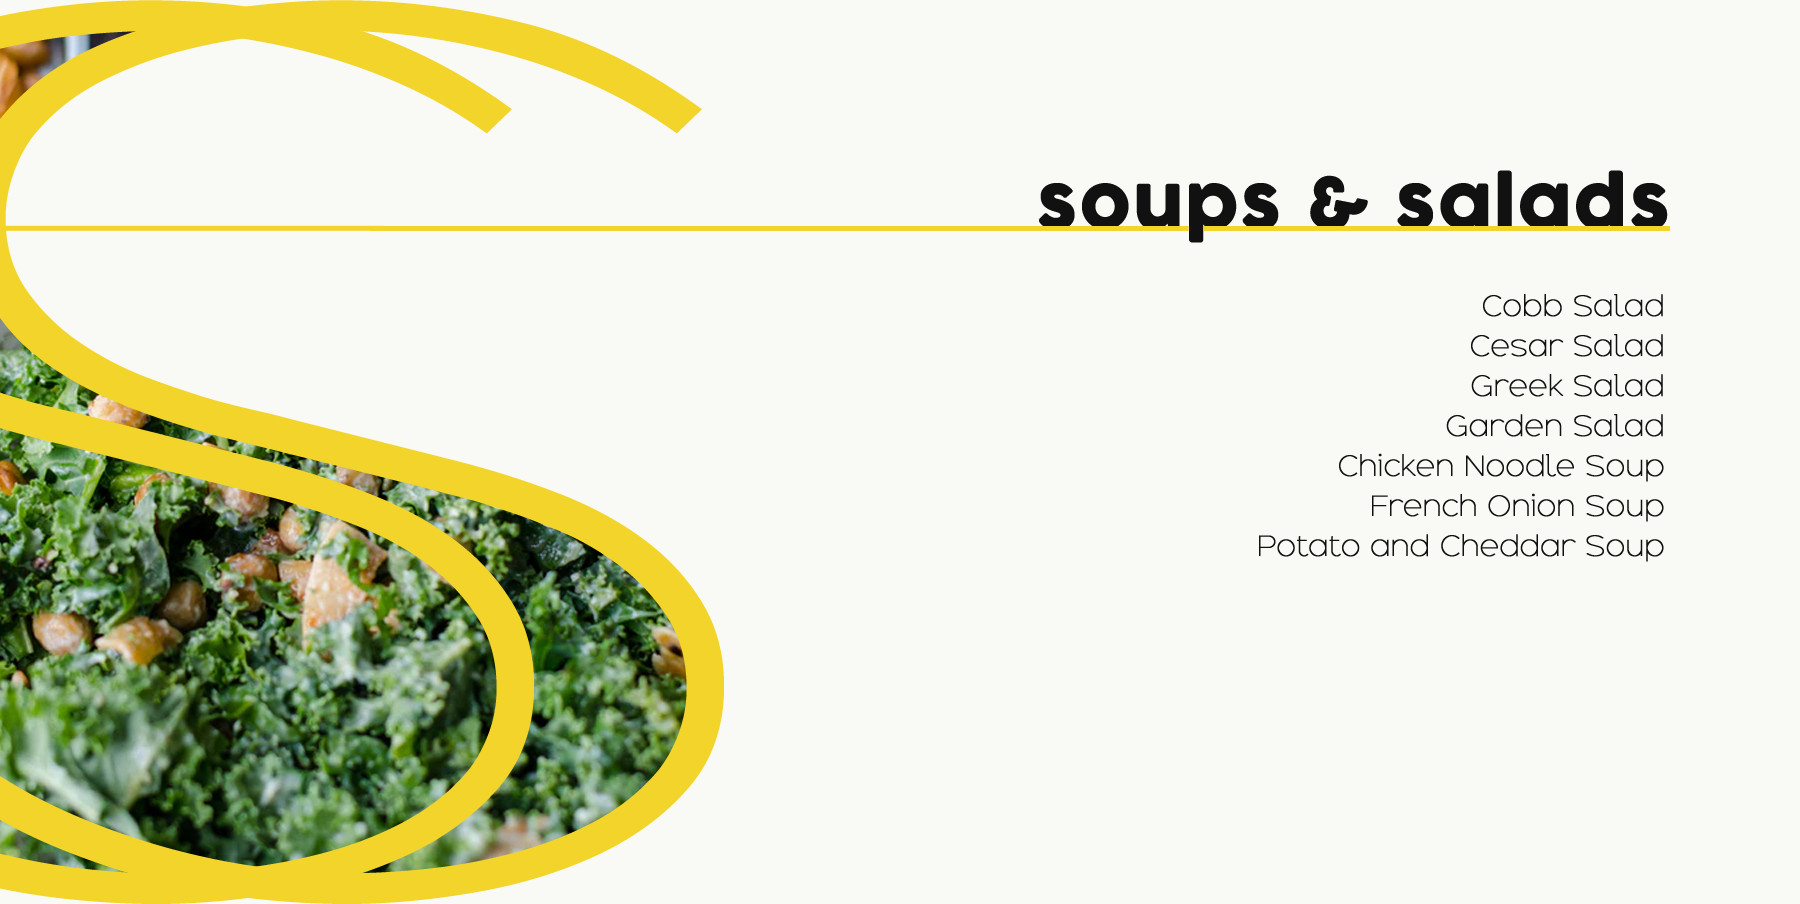 Soups and Salads menu.